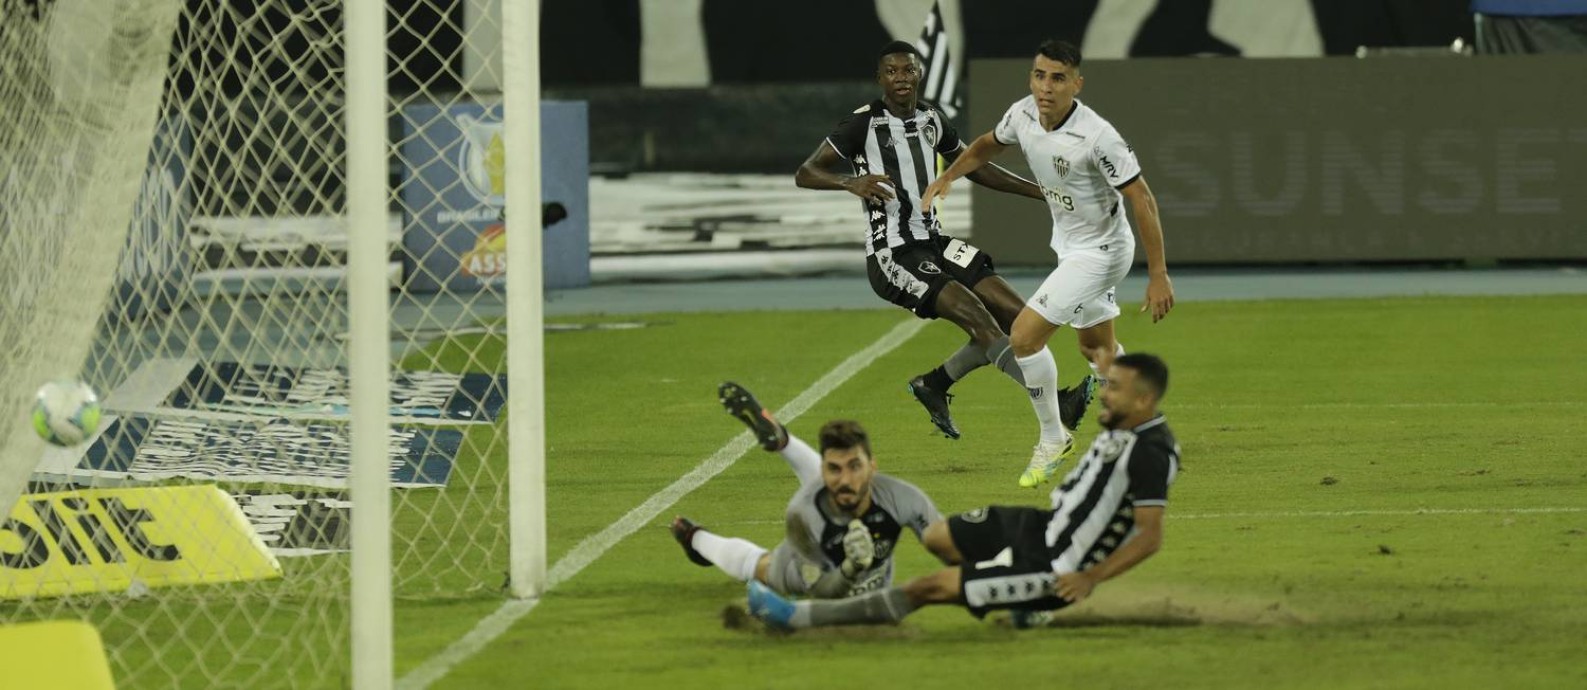 Como Autuori respondeu plano de Sampaoli e Botafogo venceu o Atlético-MG -  Jornal O Globo